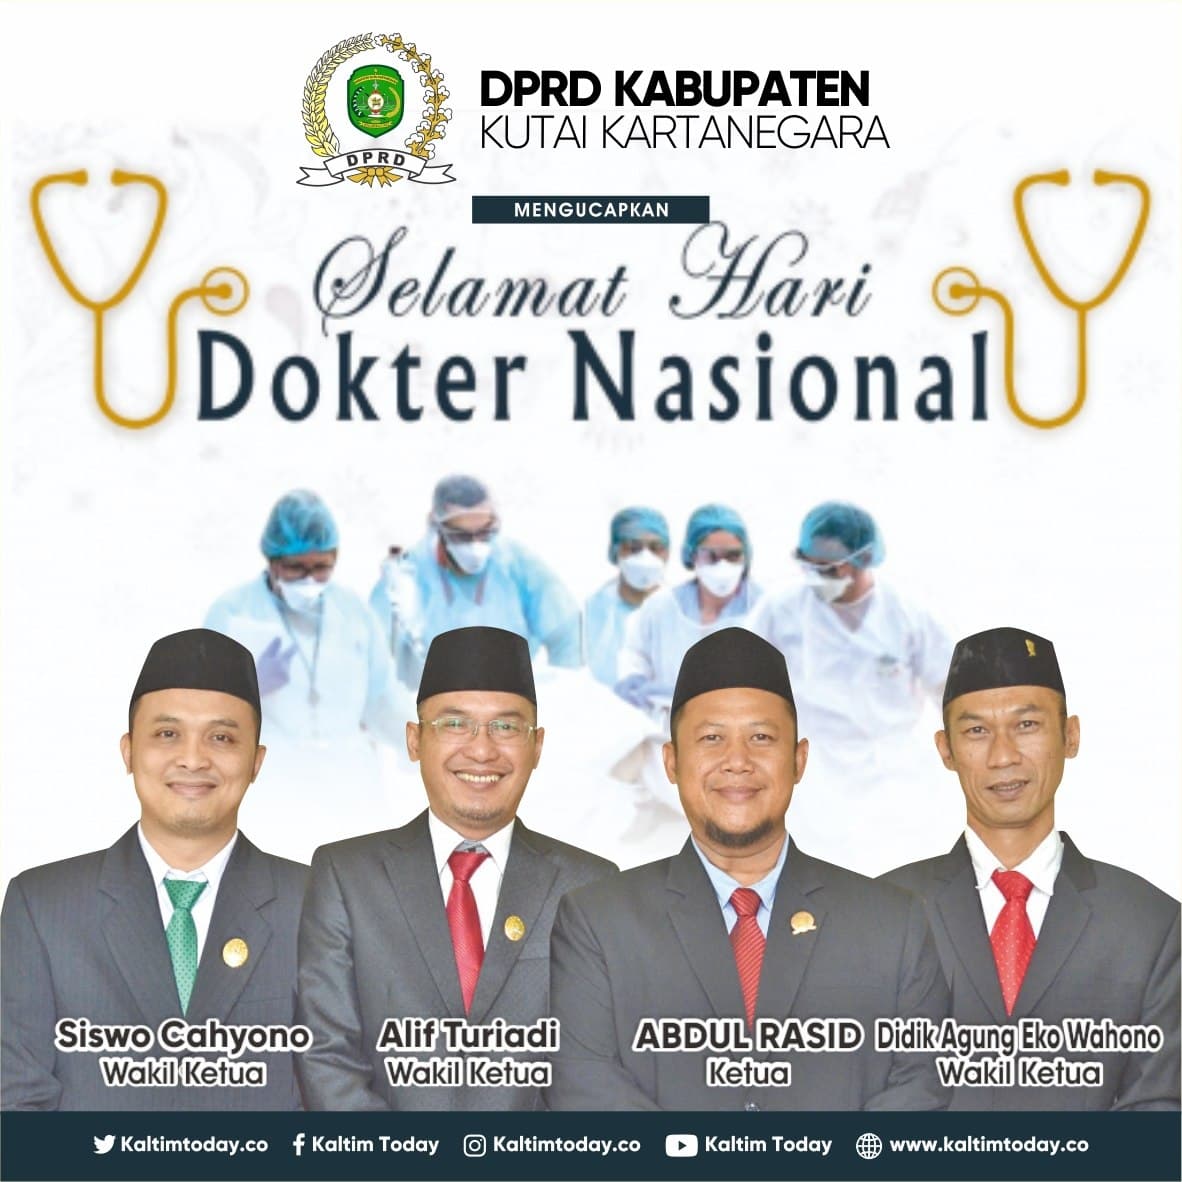 Hari Dokter Nasional